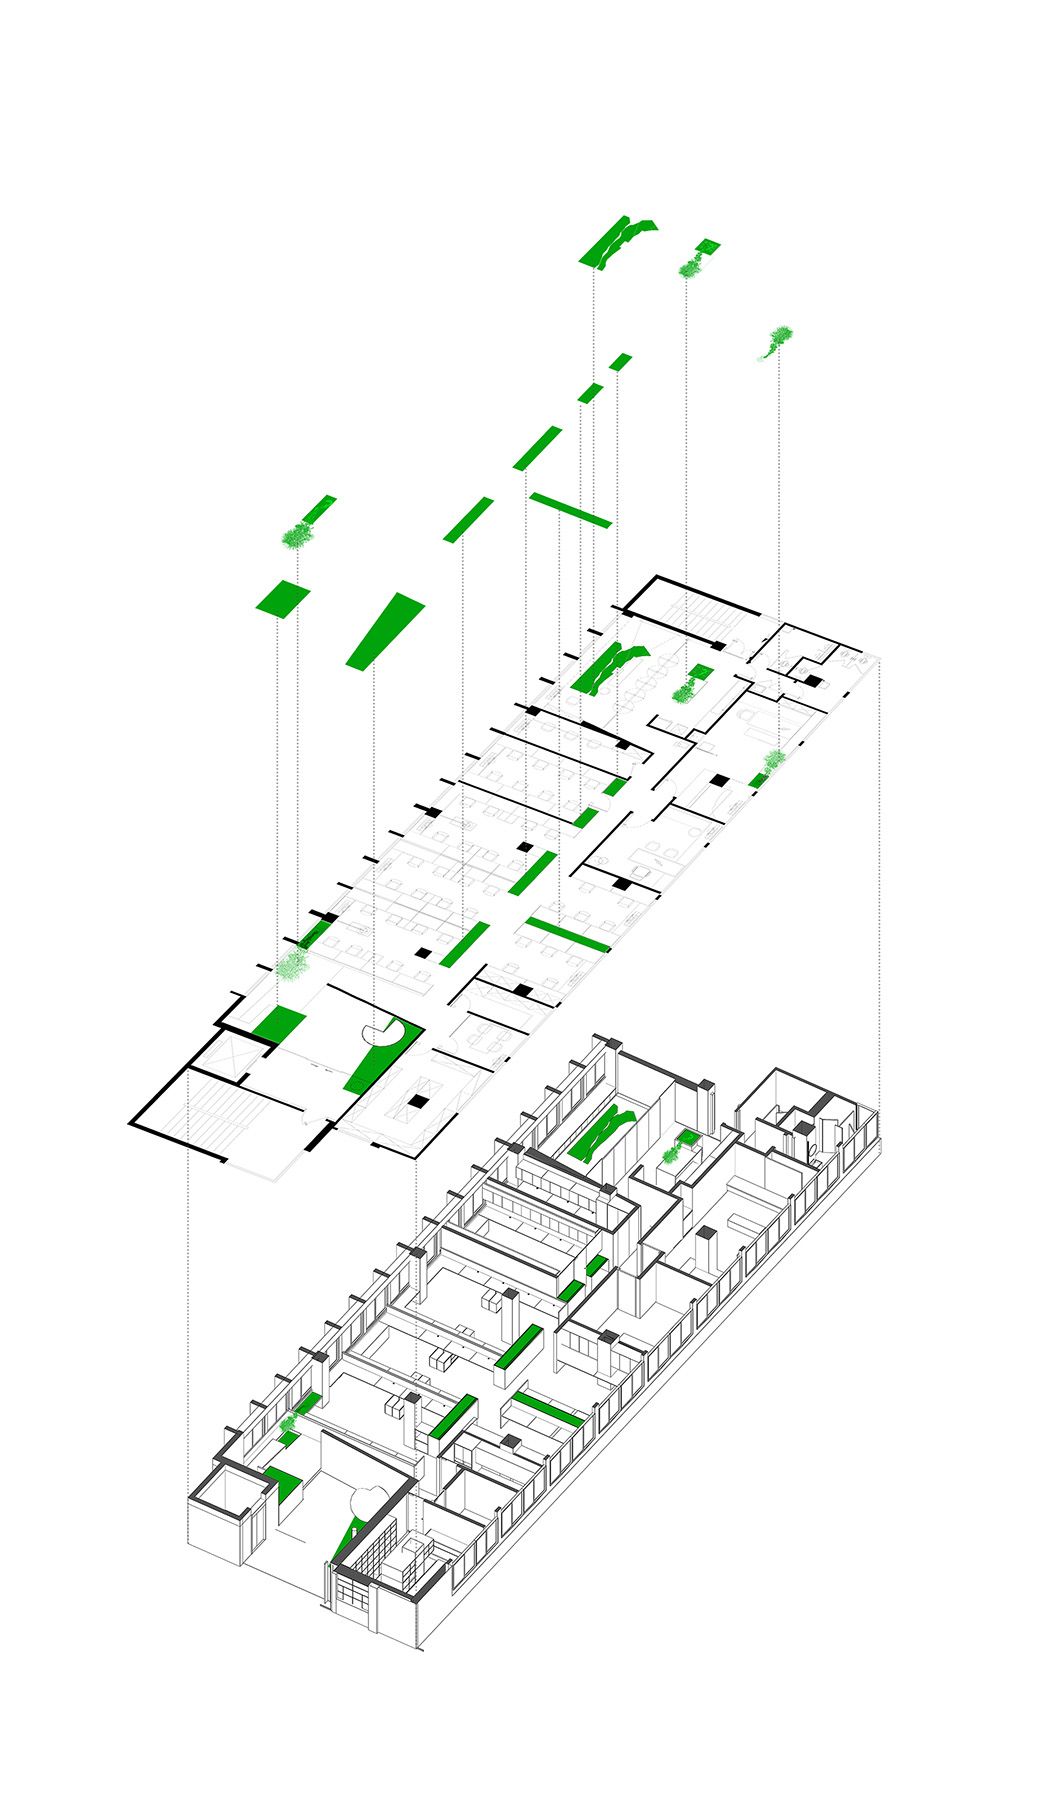 办公室现址立体平面图
绿色块代表绿色景观布置位置

在新办公室的设计中，本则设计把庭院景观沿着内部流线渗透到空间的每一个角落之中，营造出办公室的内部“园林”，做到移步换景的效果，也从真正意义上打造出充满灵性和诗意的办公空间。